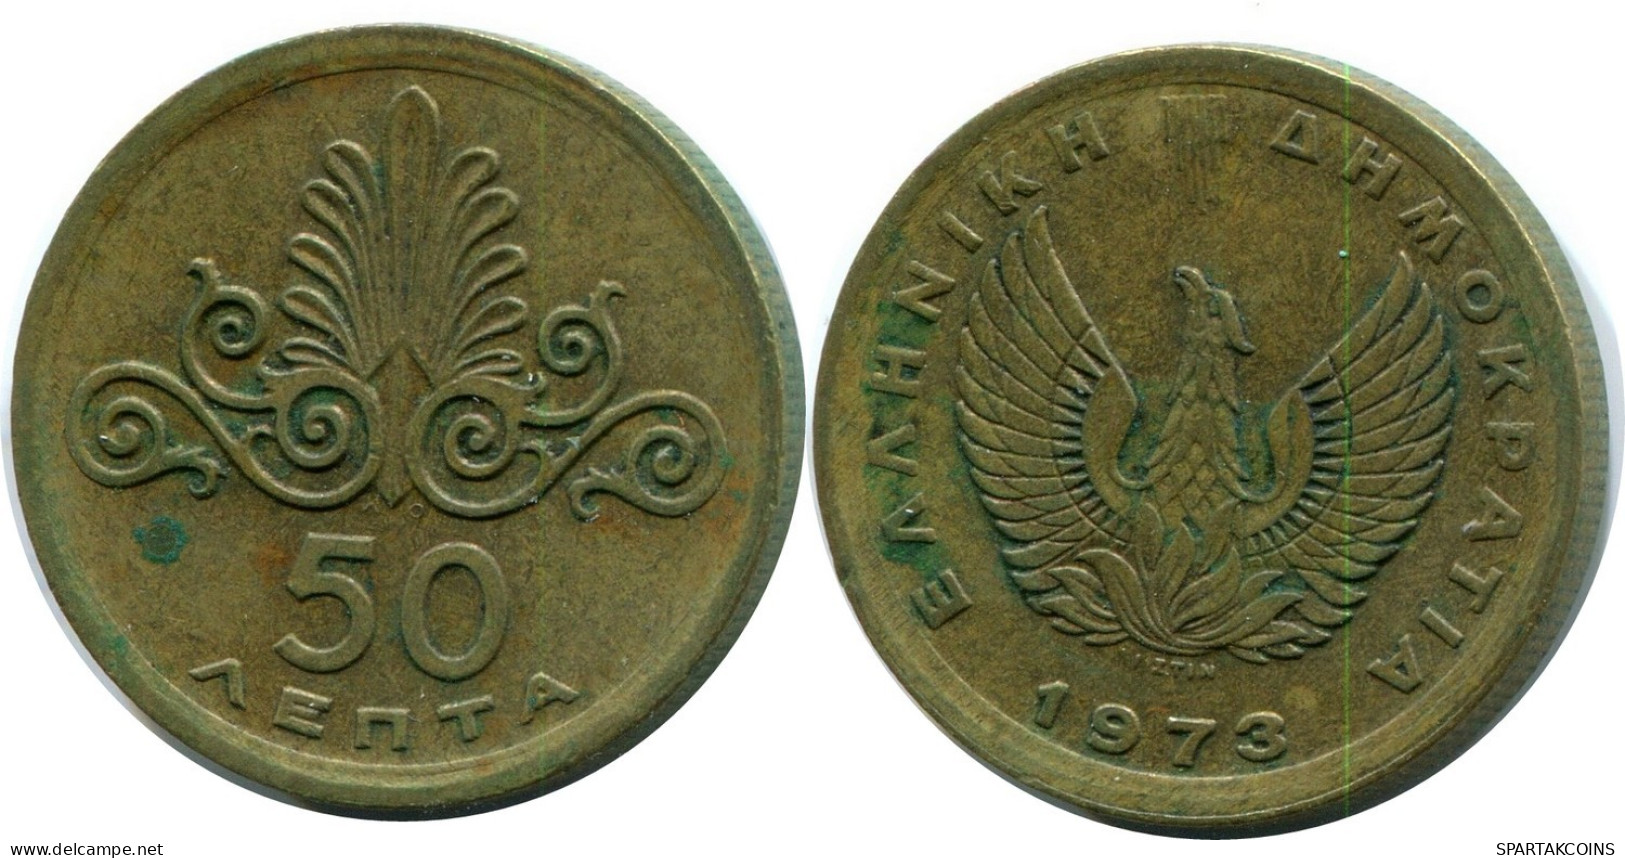 50 LEPTA 1973 GRECIA GREECE Moneda #AW707.E.A - Grèce